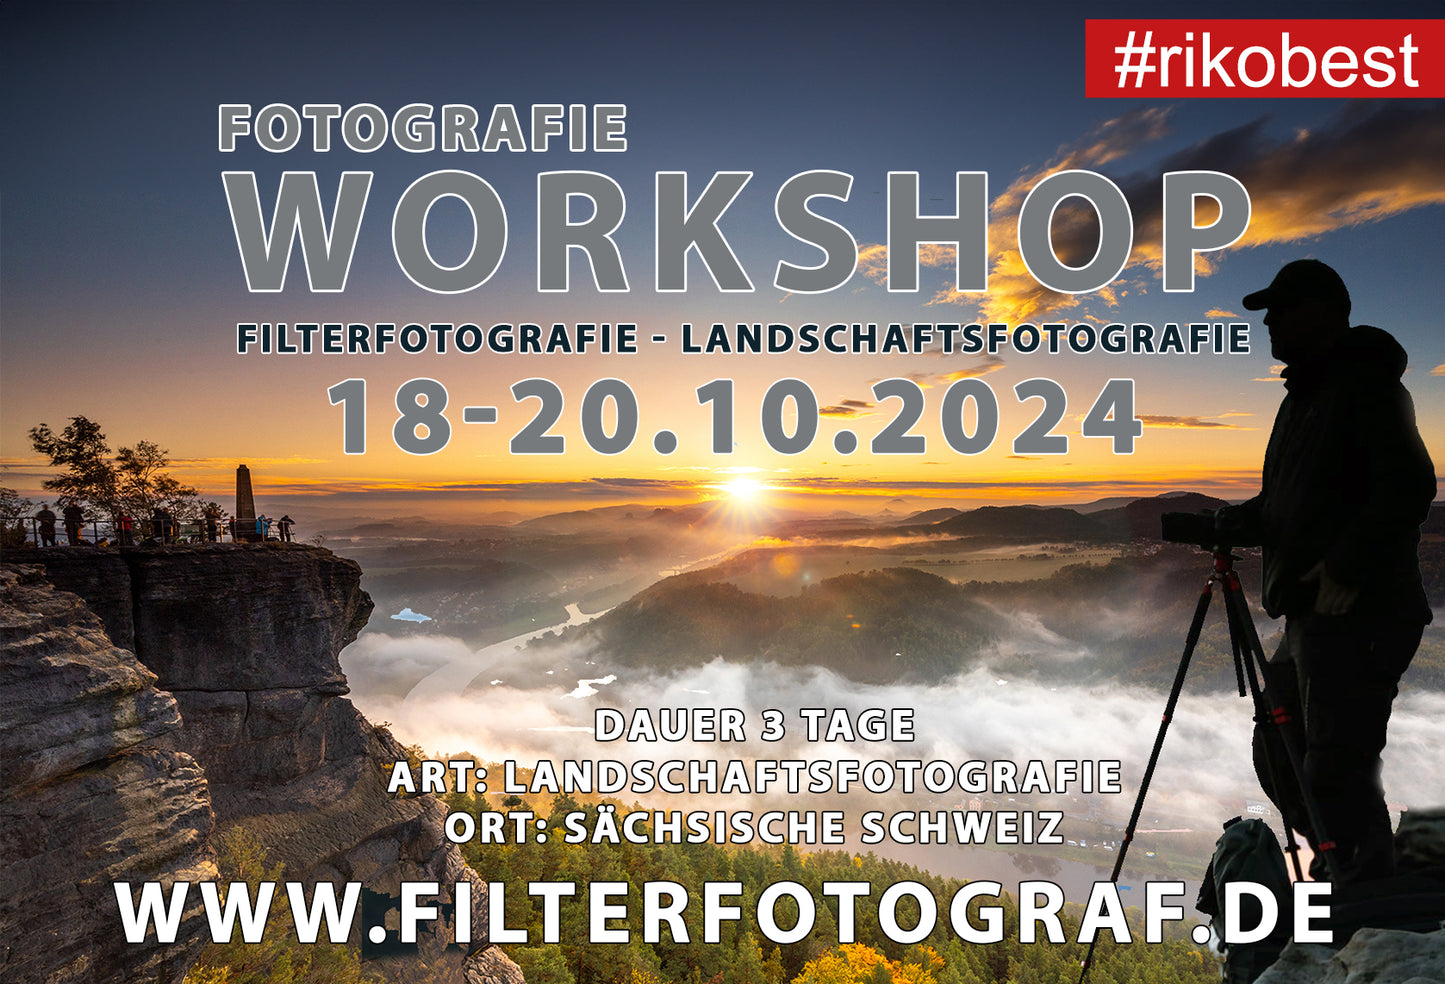 Fotografie Workshop - 3 Tage intensiv Workshop - Sächsiche Schweiz - 18-20.10.2024 (inklusive Übernachtung)